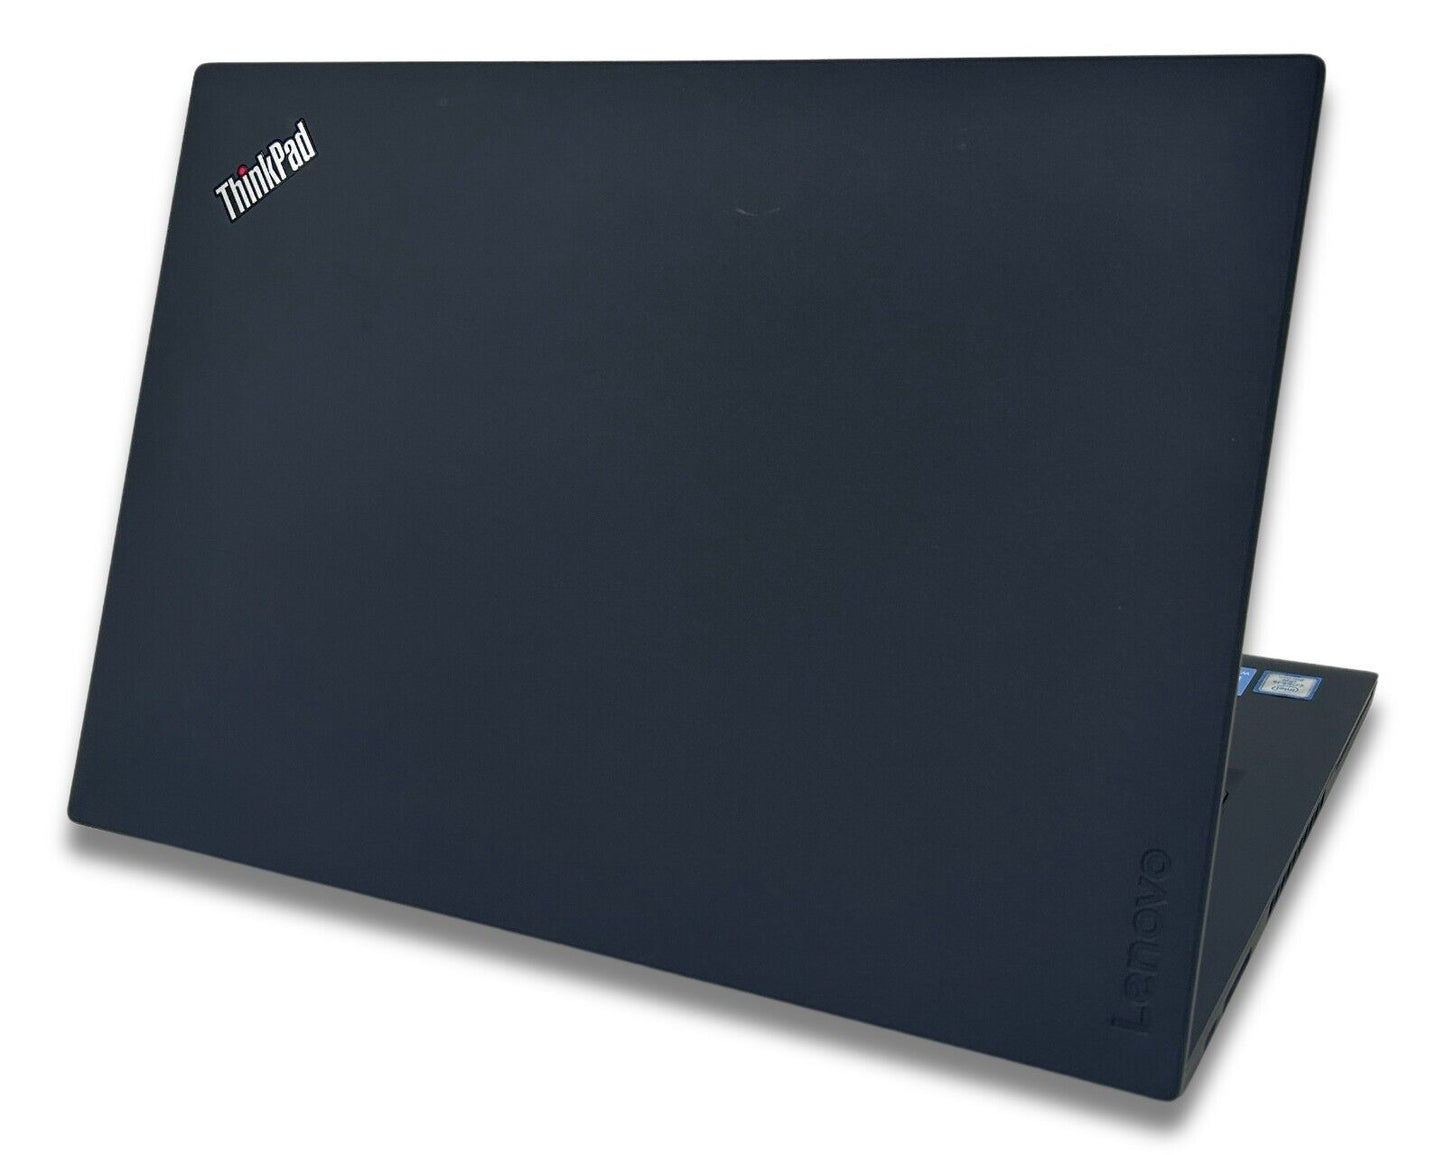 Lenovo T480 Core i7-8550U 16GB Ram Laptop #920SE